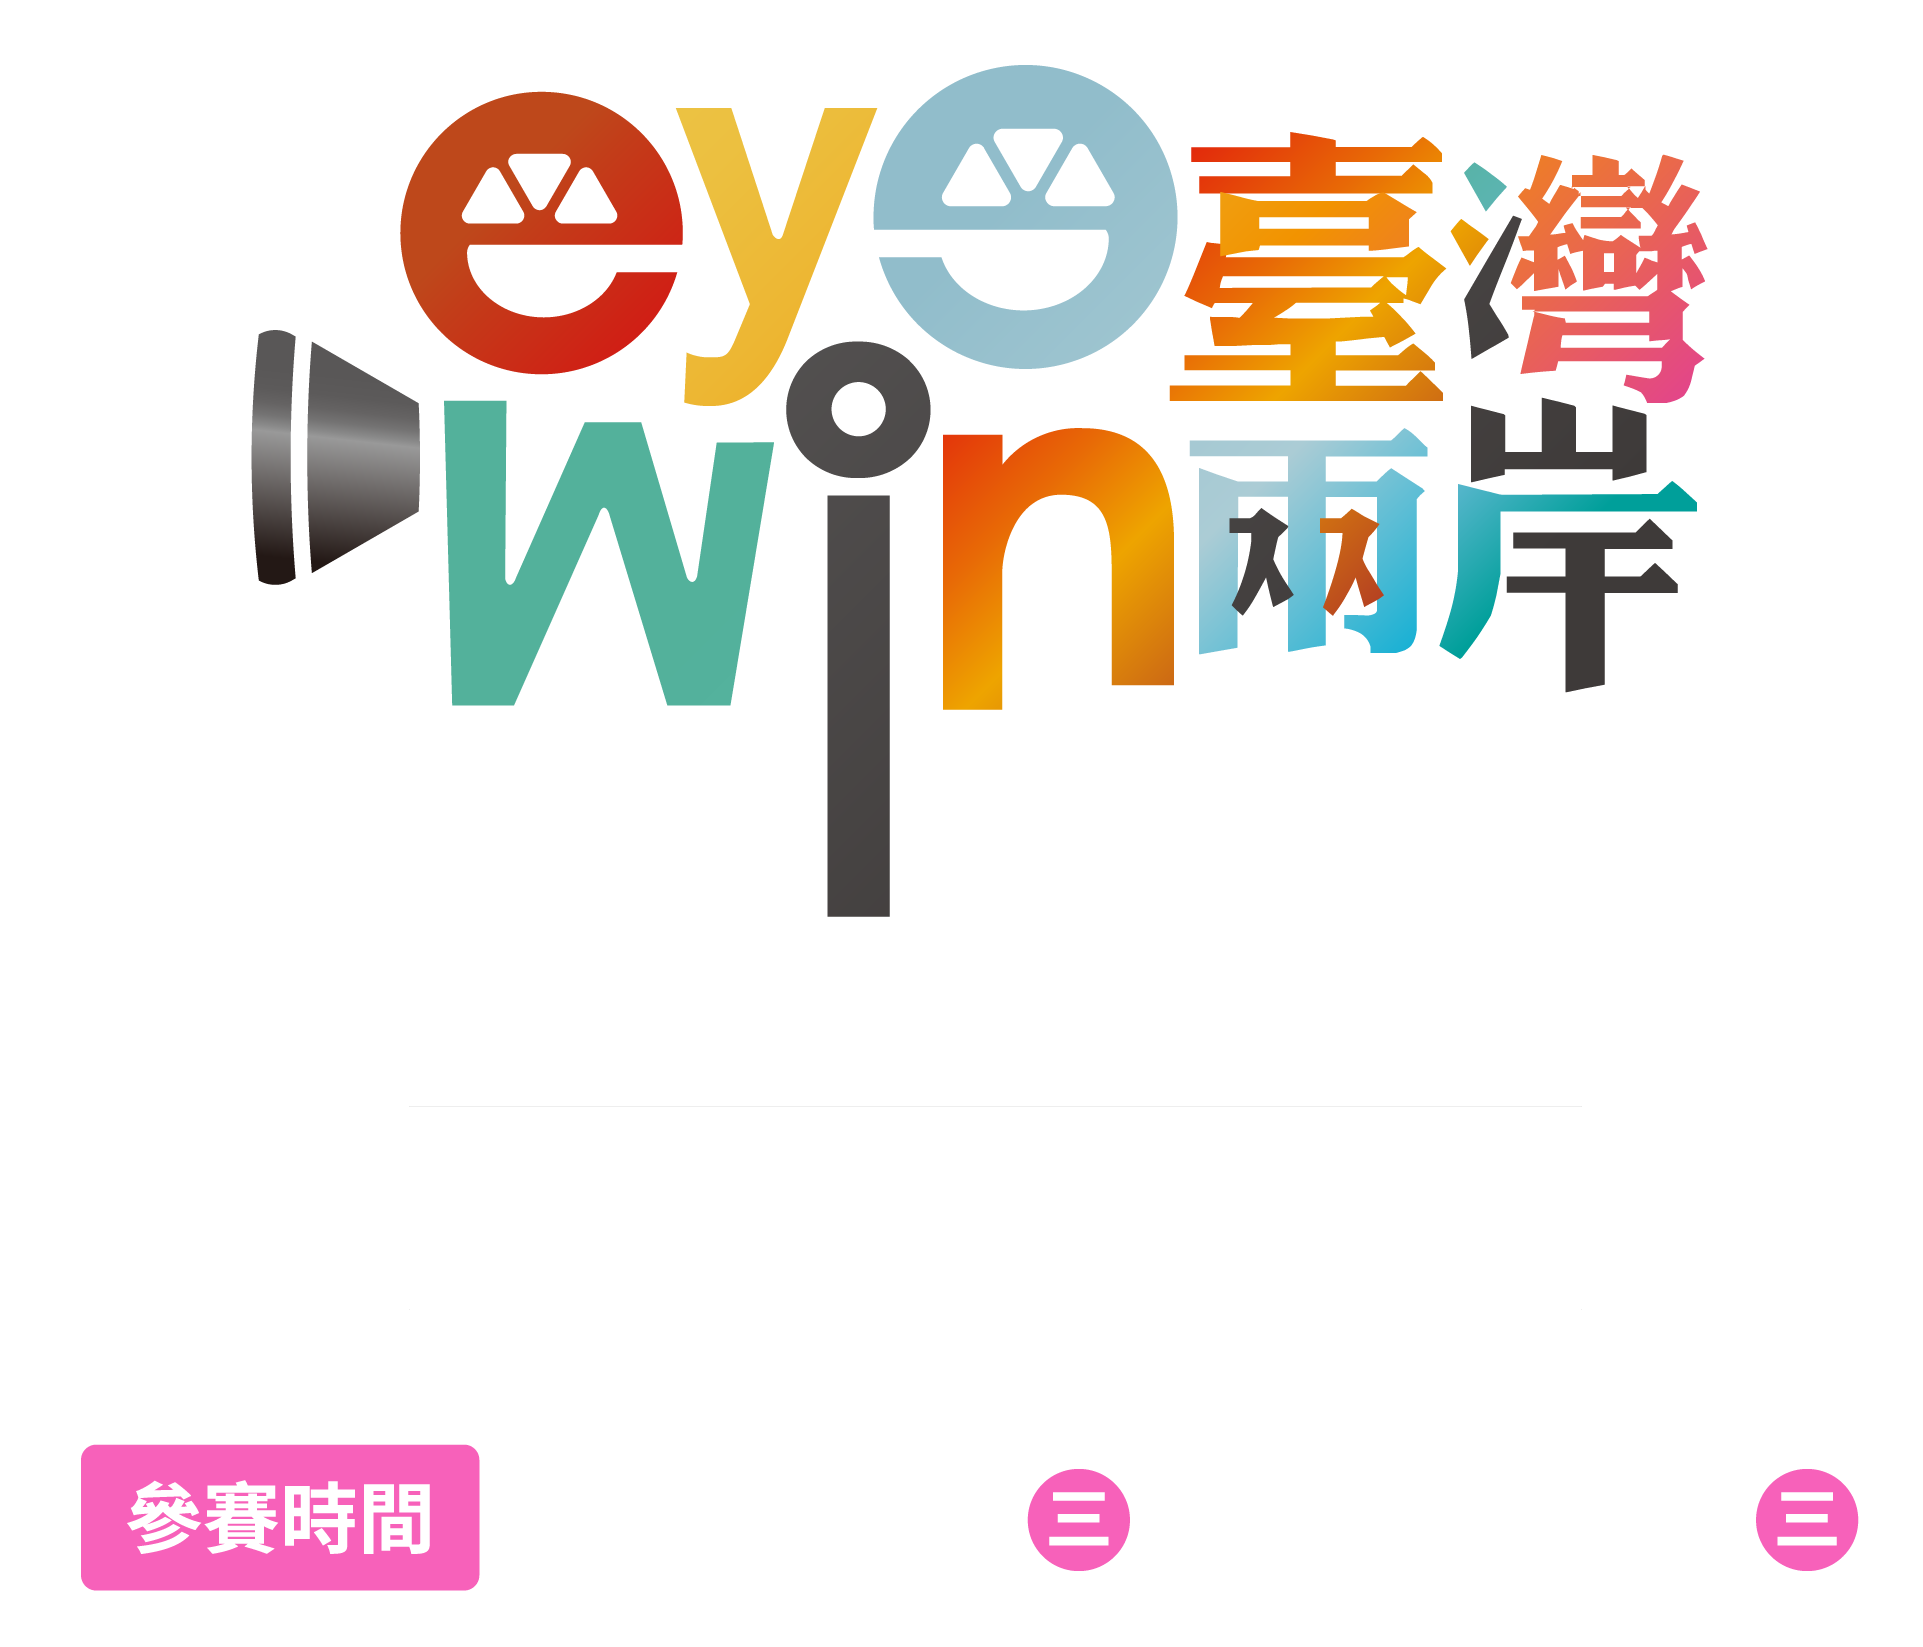 第6屆eye臺灣win兩岸短片徵選競賽